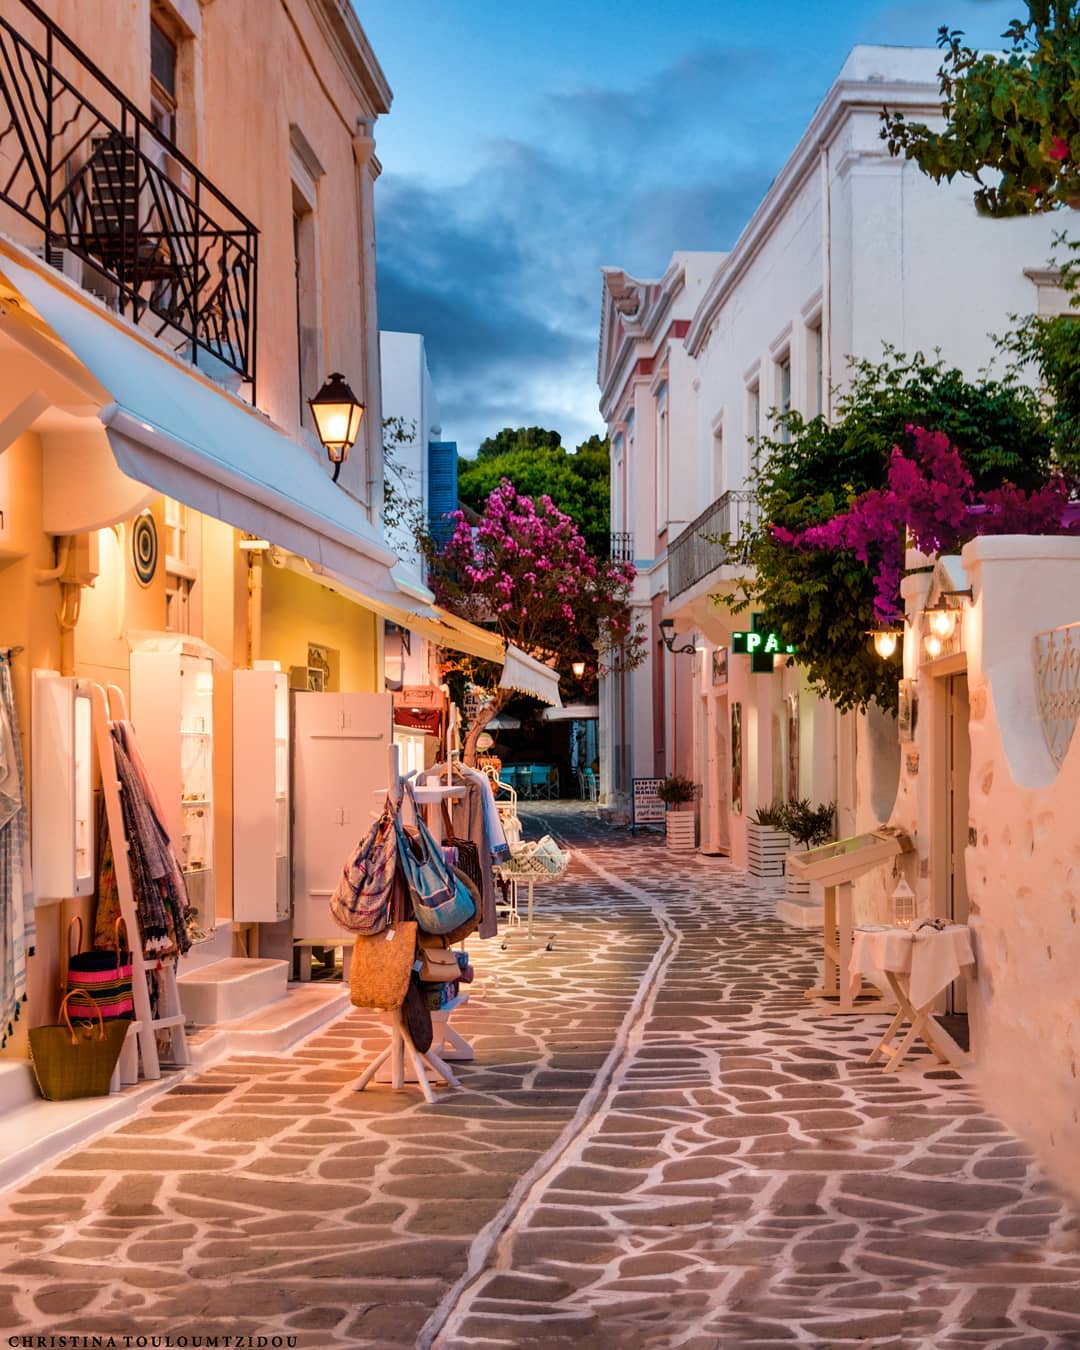 Улицы Греции на снимках Кристины Тулумтзиду